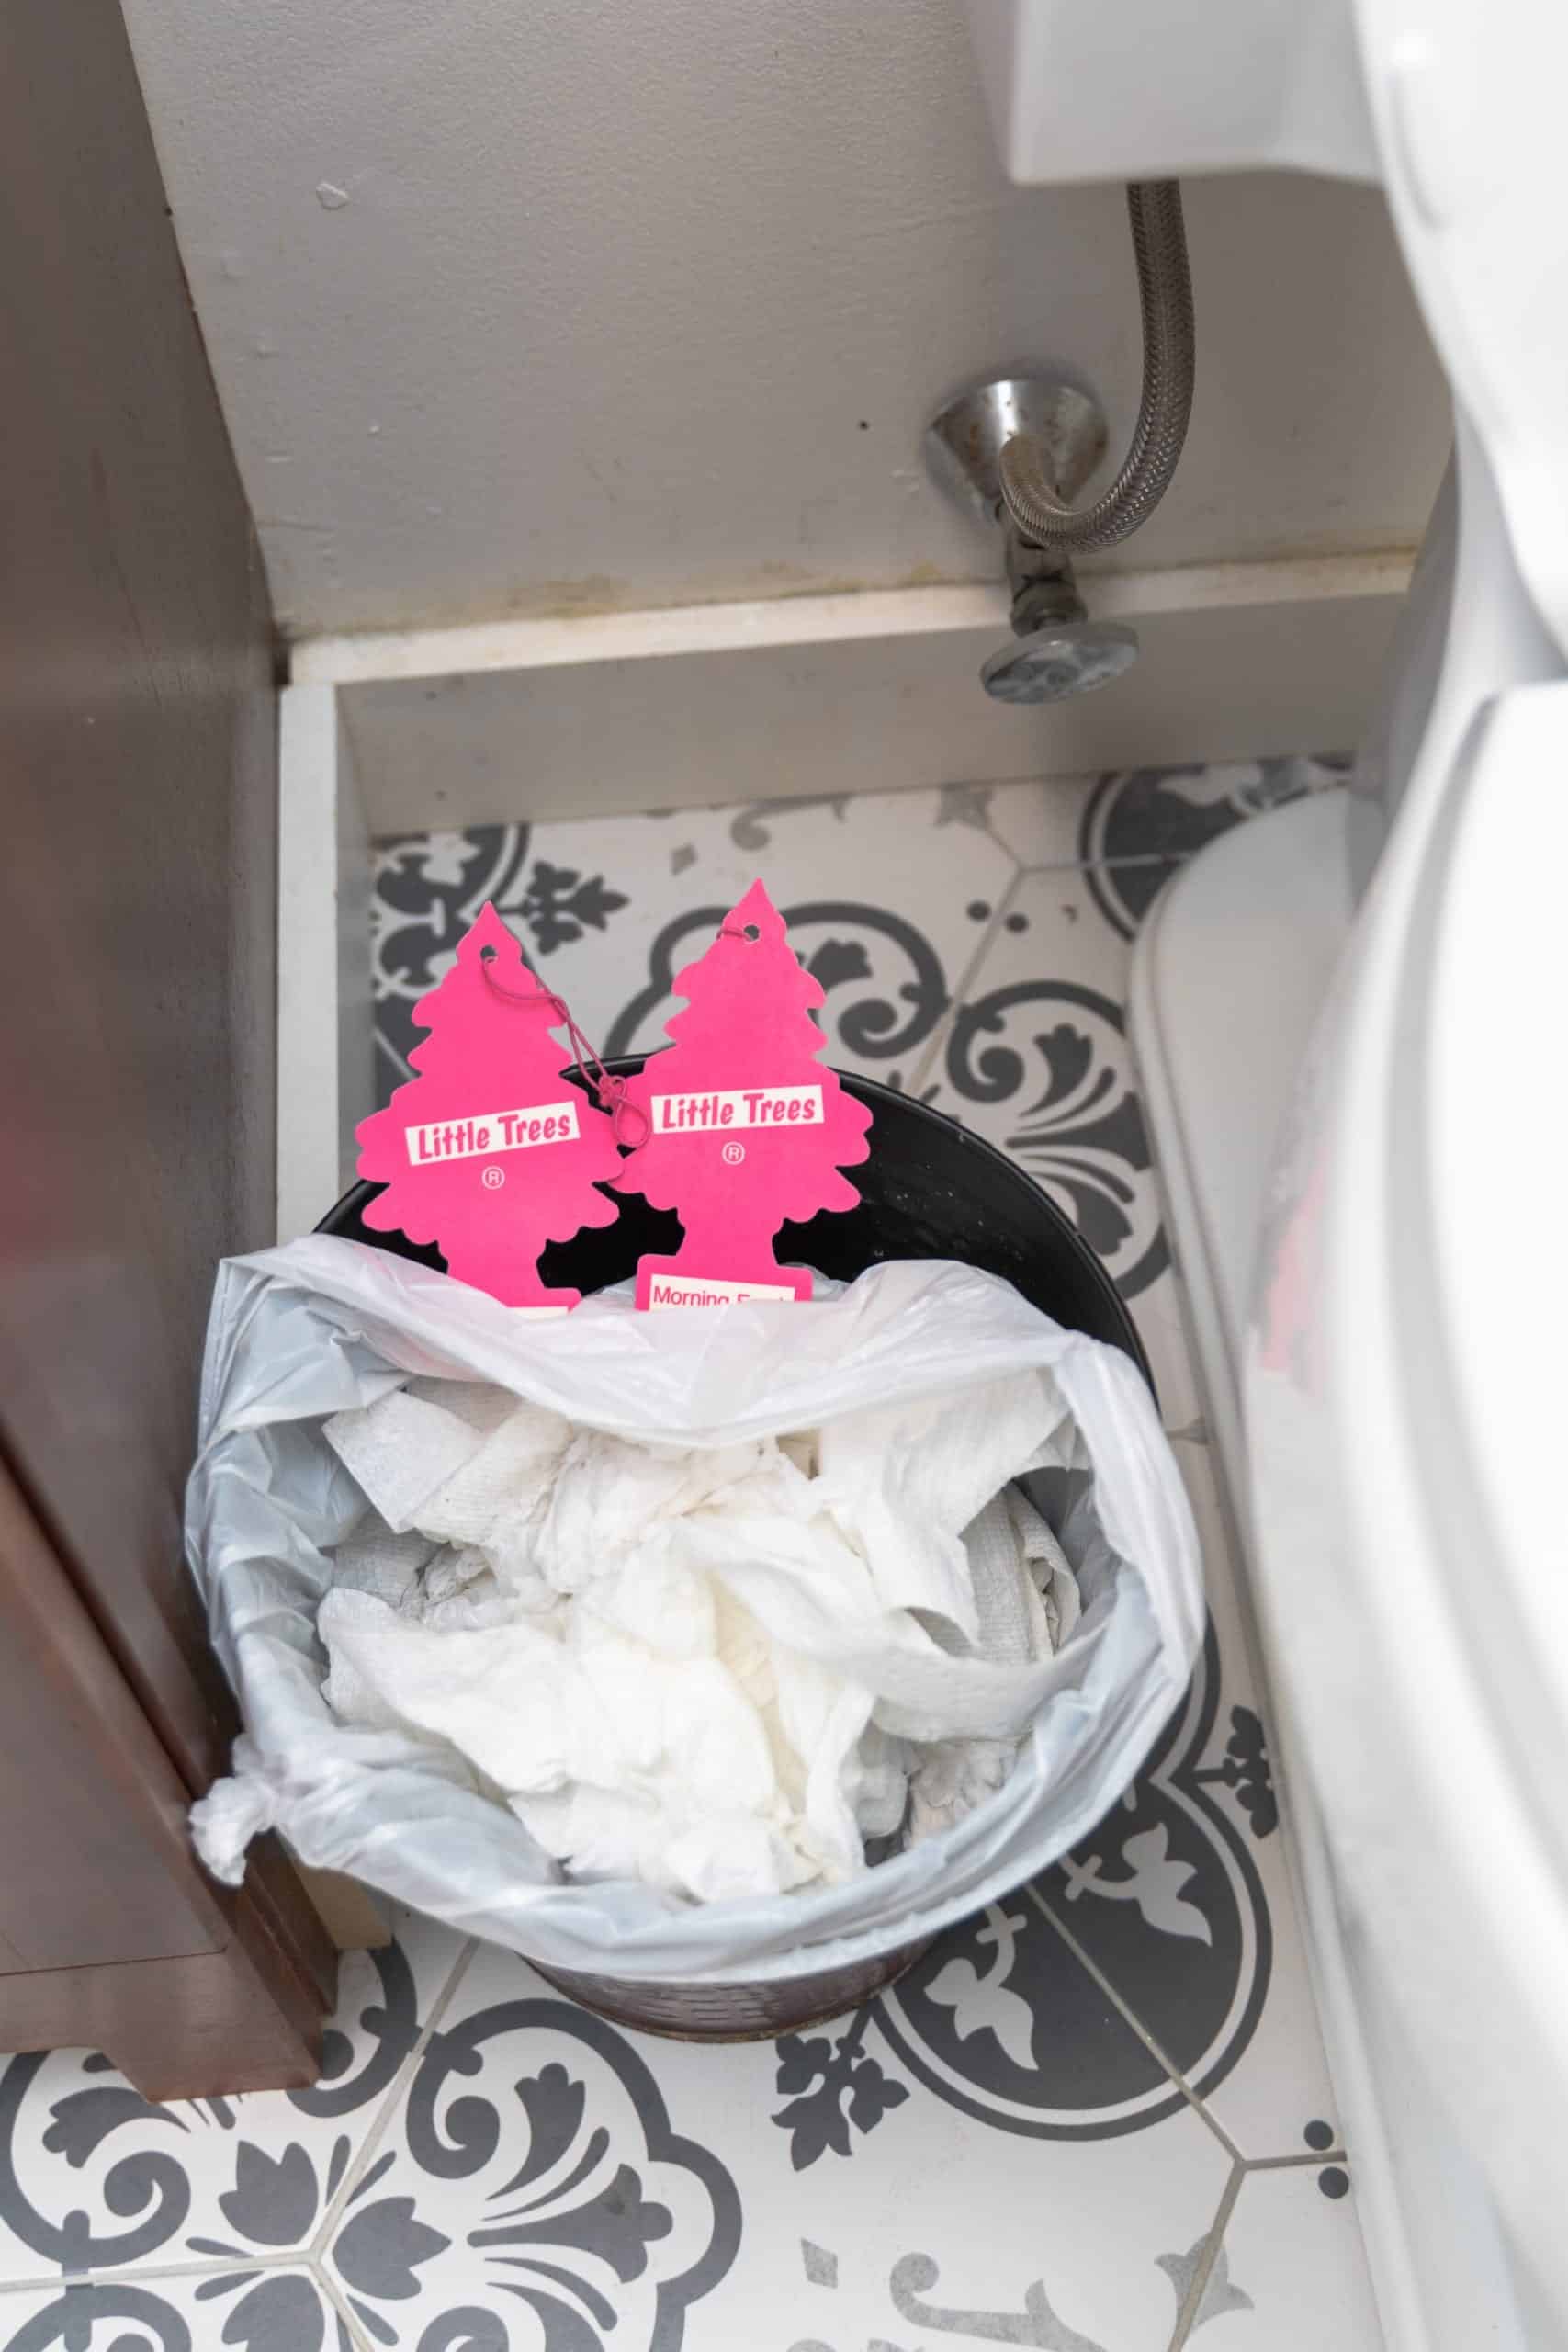 air fresheners in bathroom garbage bin